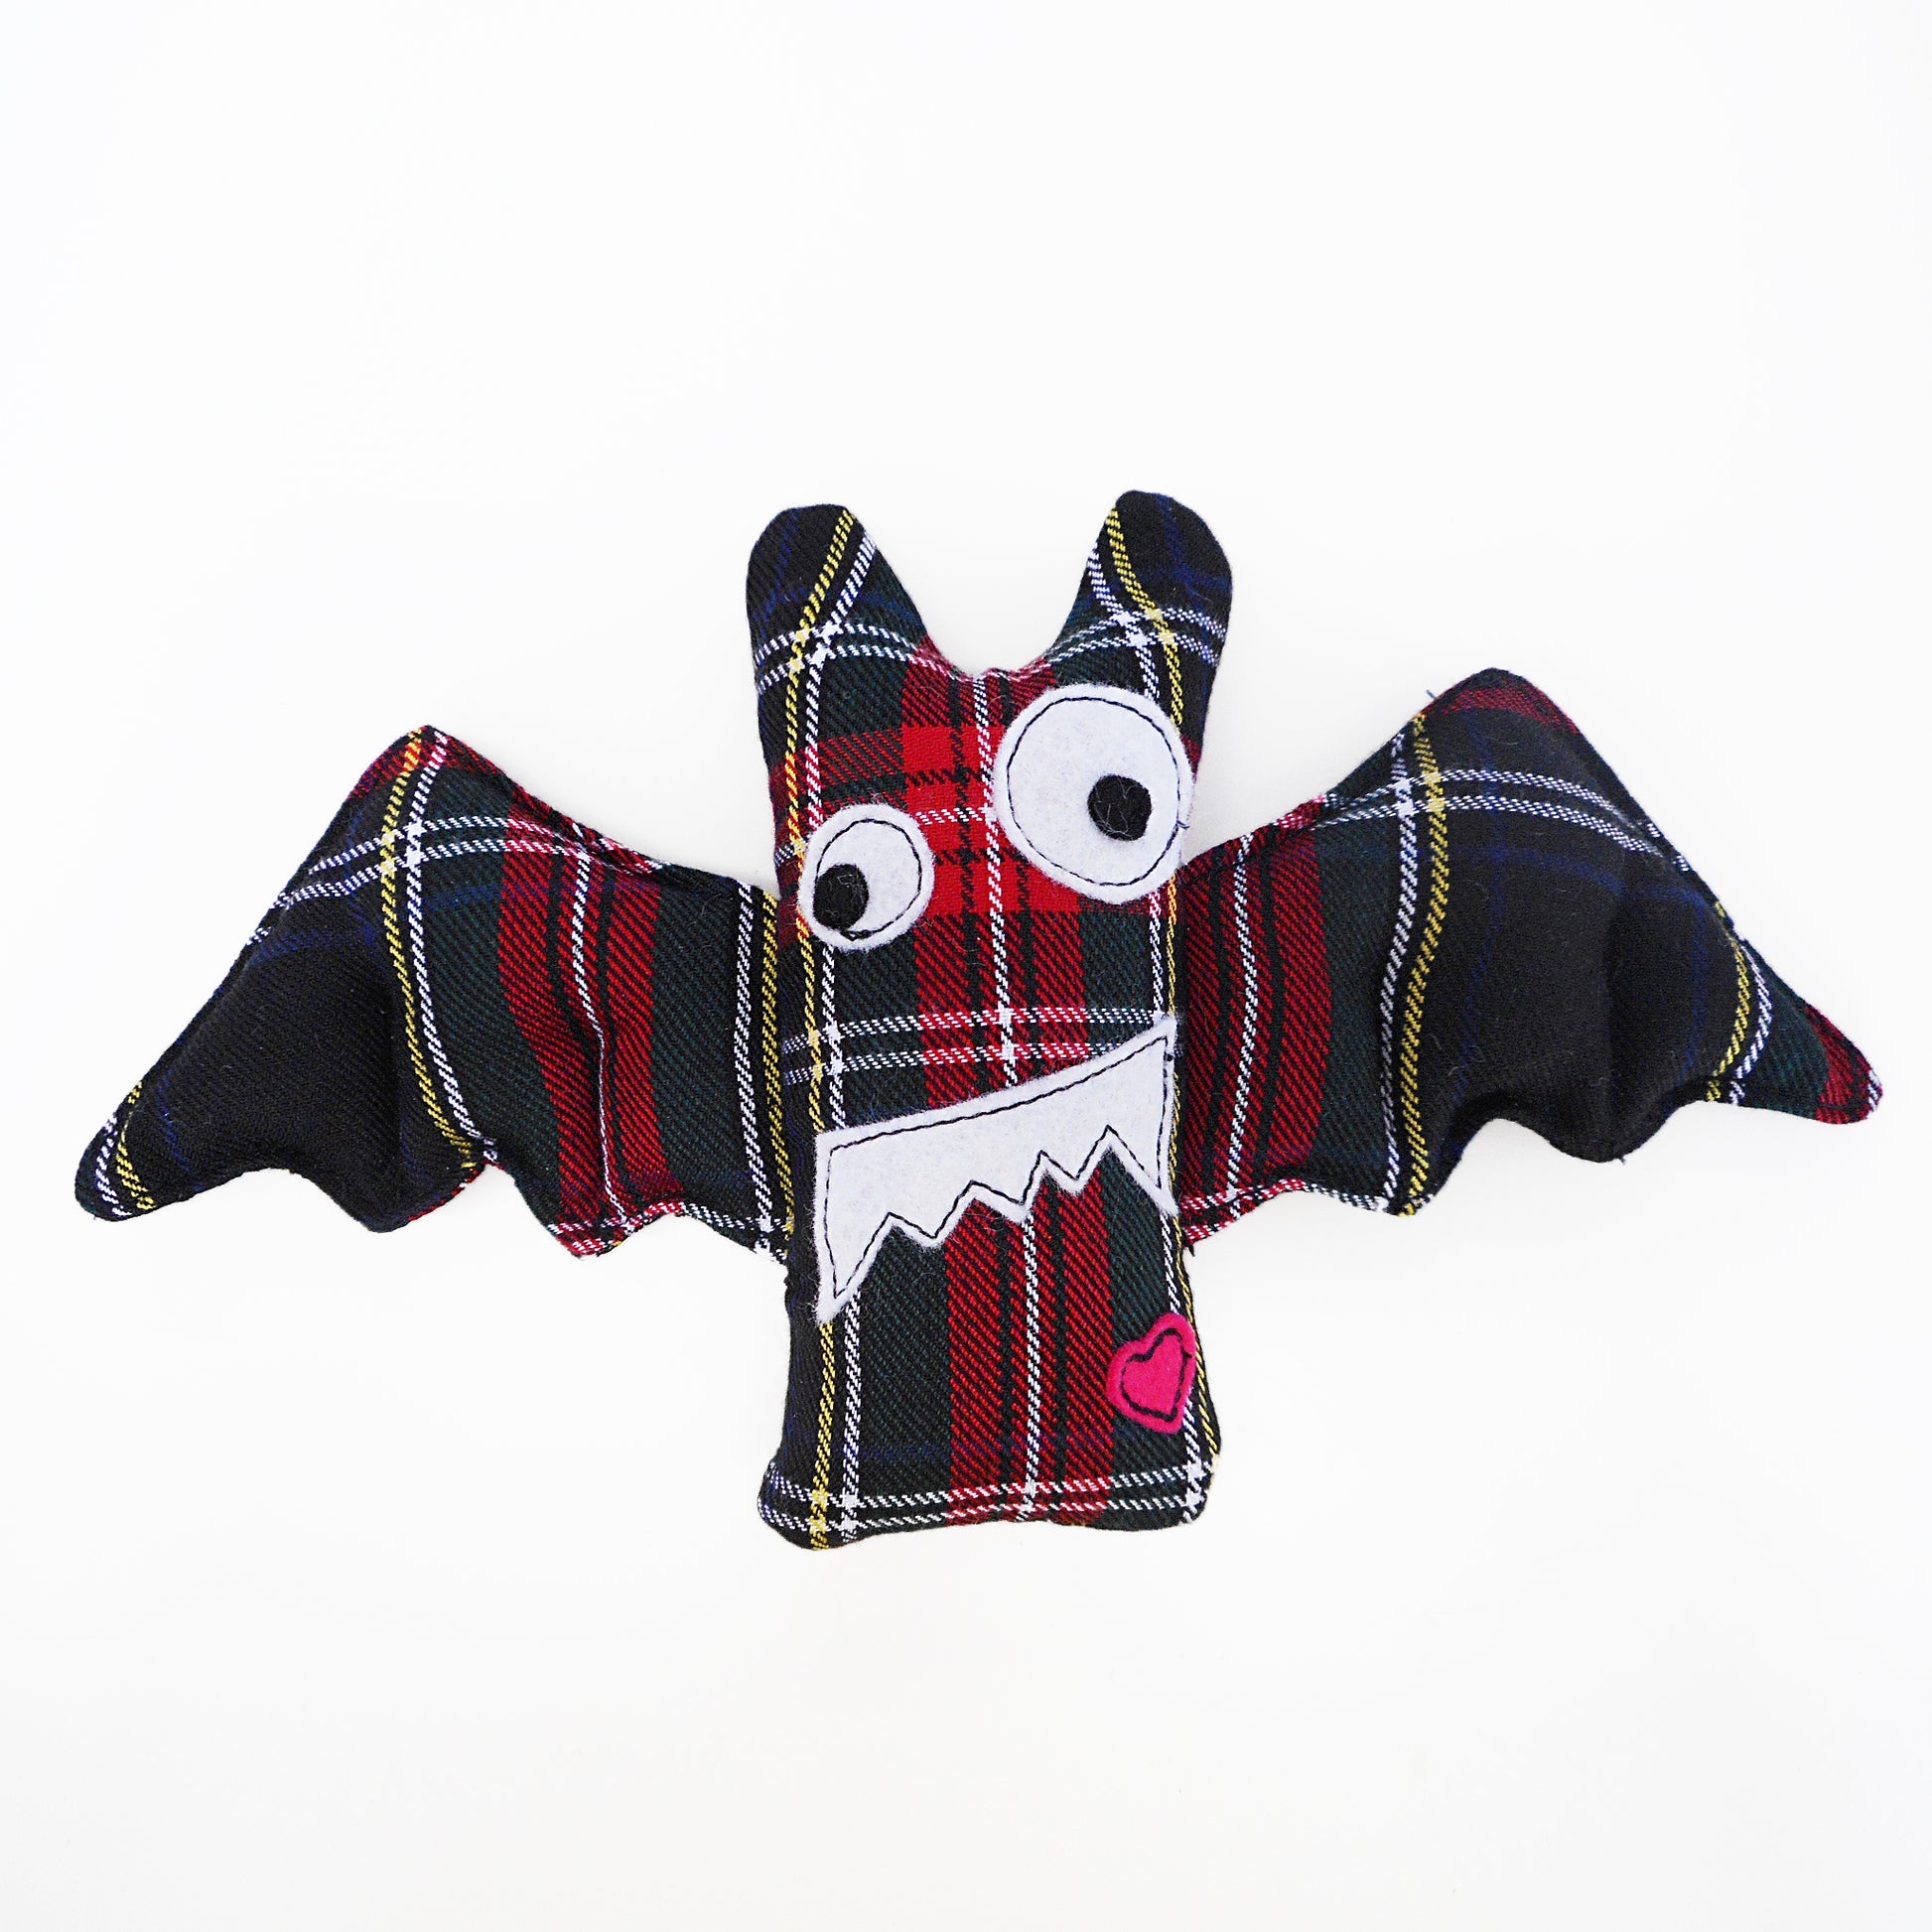 Niedliche handgefertigte Plüsch-Fledermäuse sind aus verschiedenfarbigem Tartanstoff gefertigt. Hier in Dunkelgrün mit Rot.